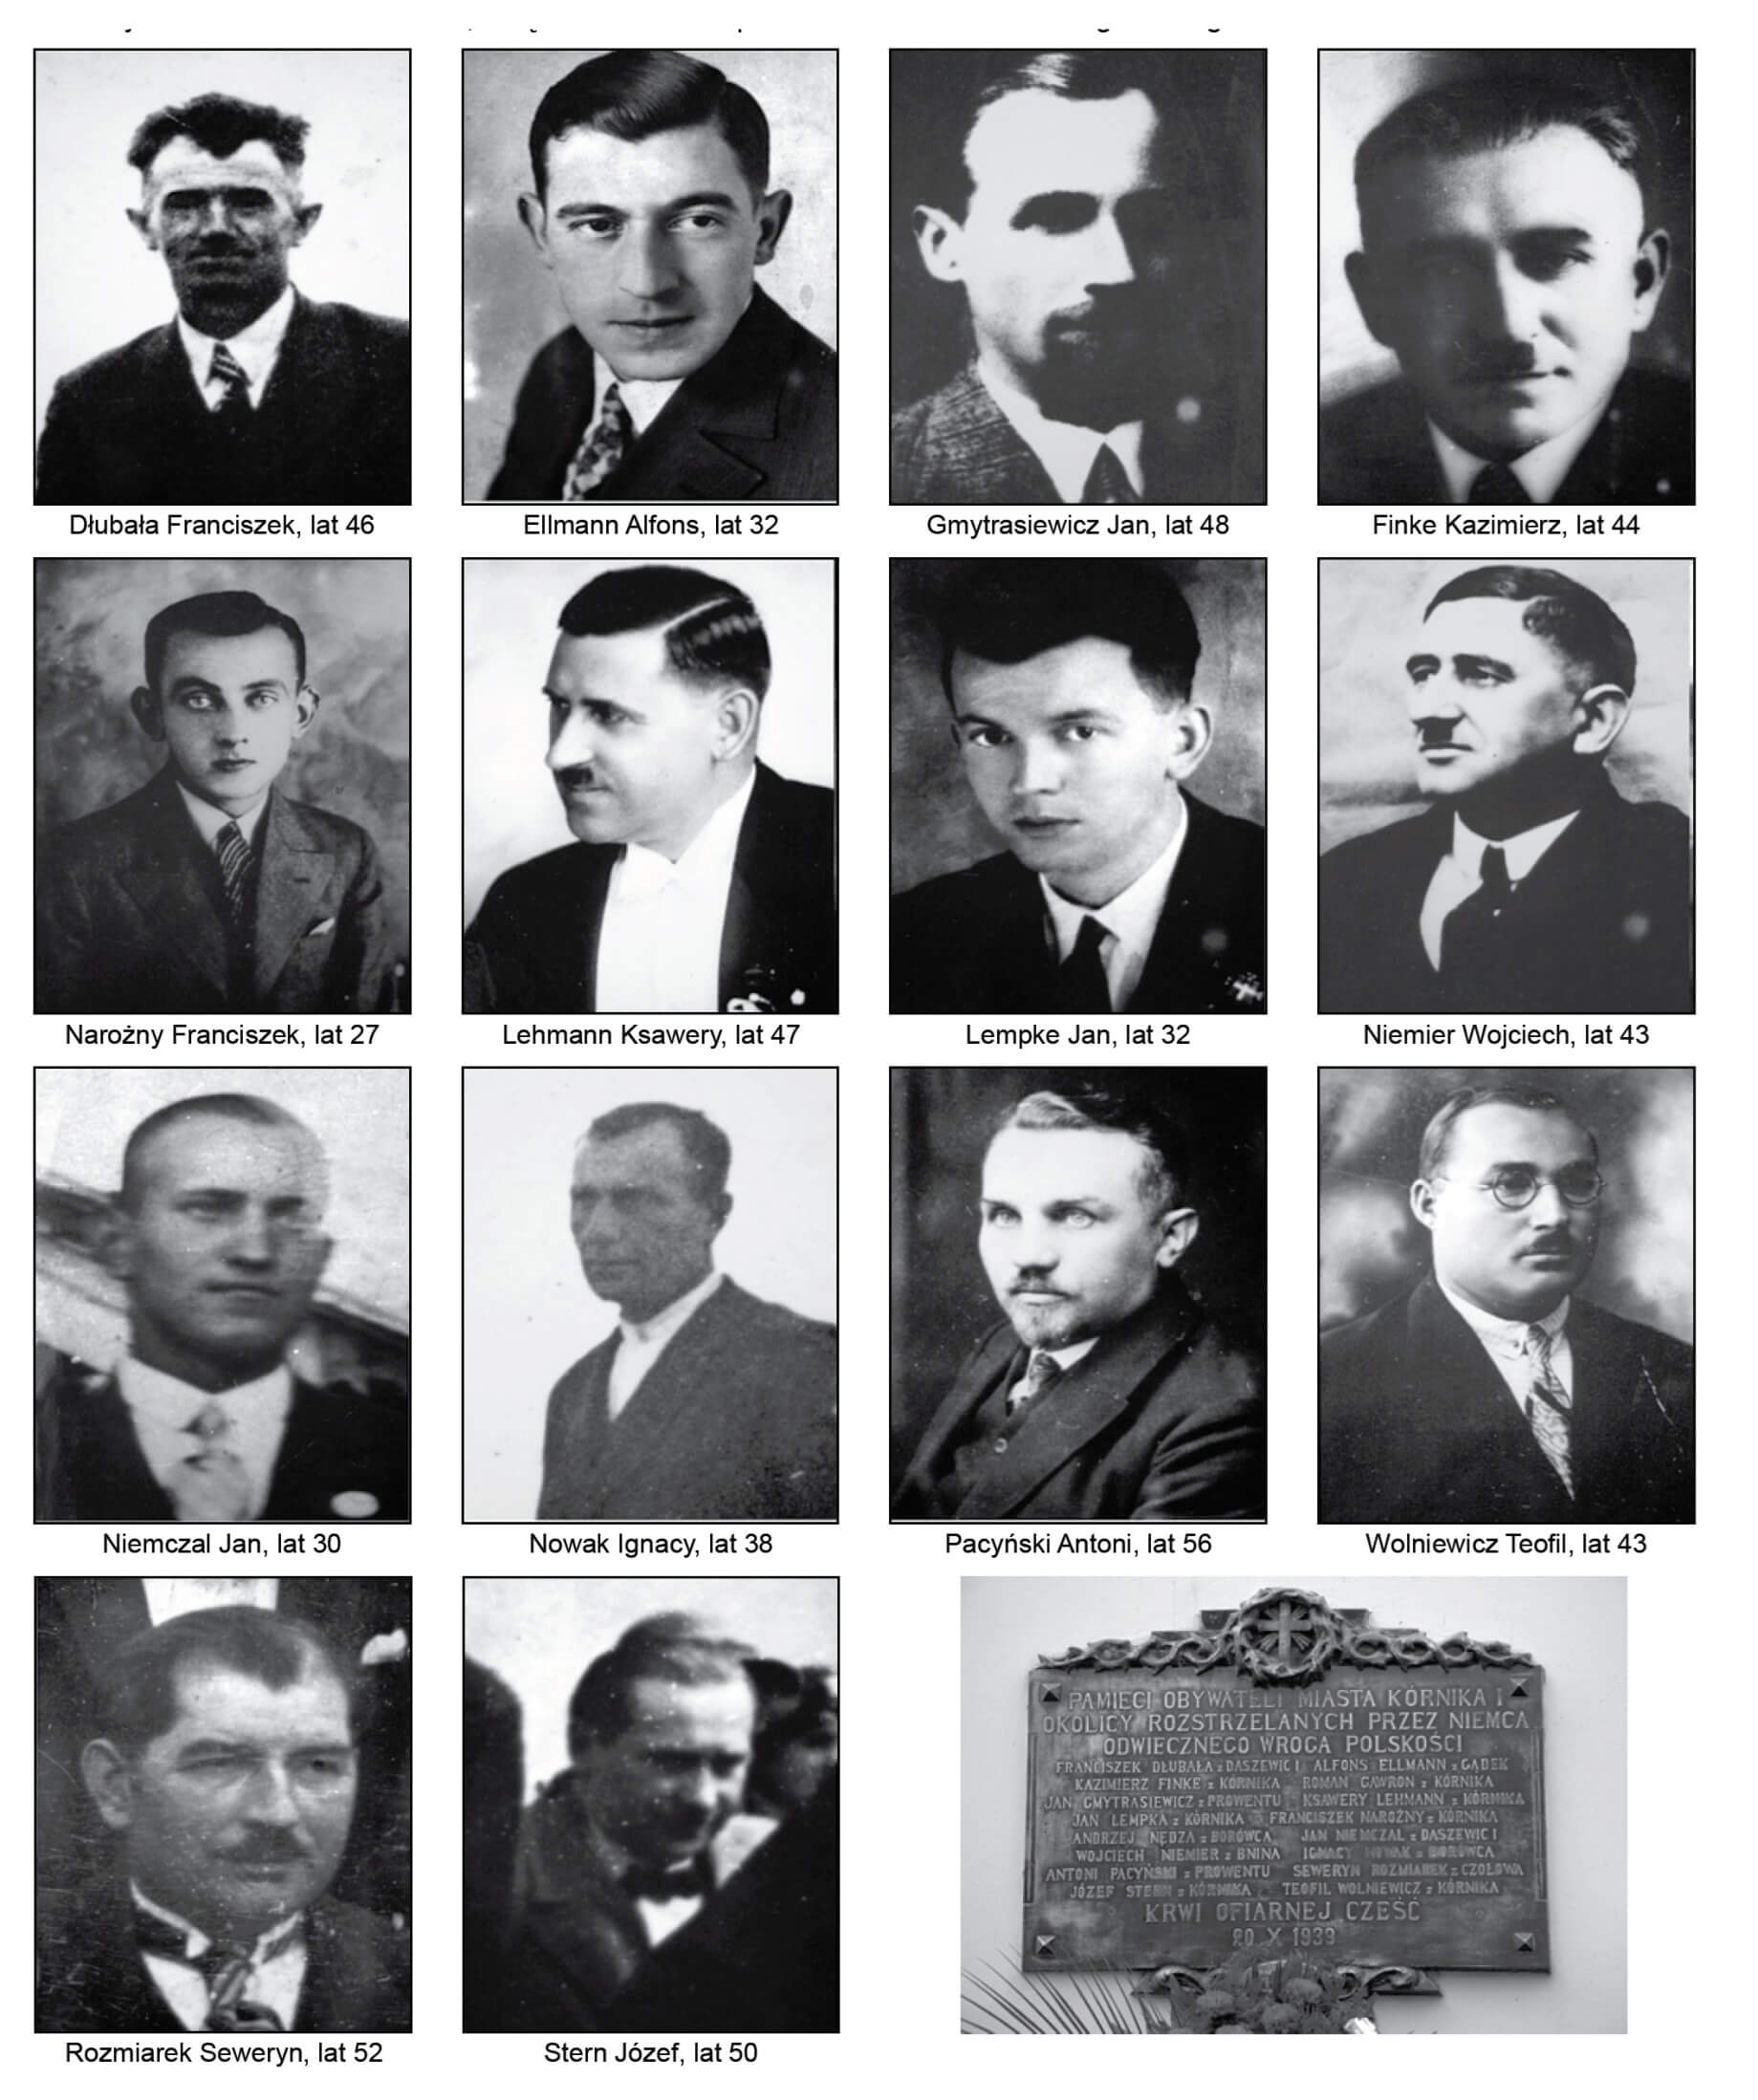 Portrety 14 rozstrzelanych obywateli oraz tablica pamiątkowa